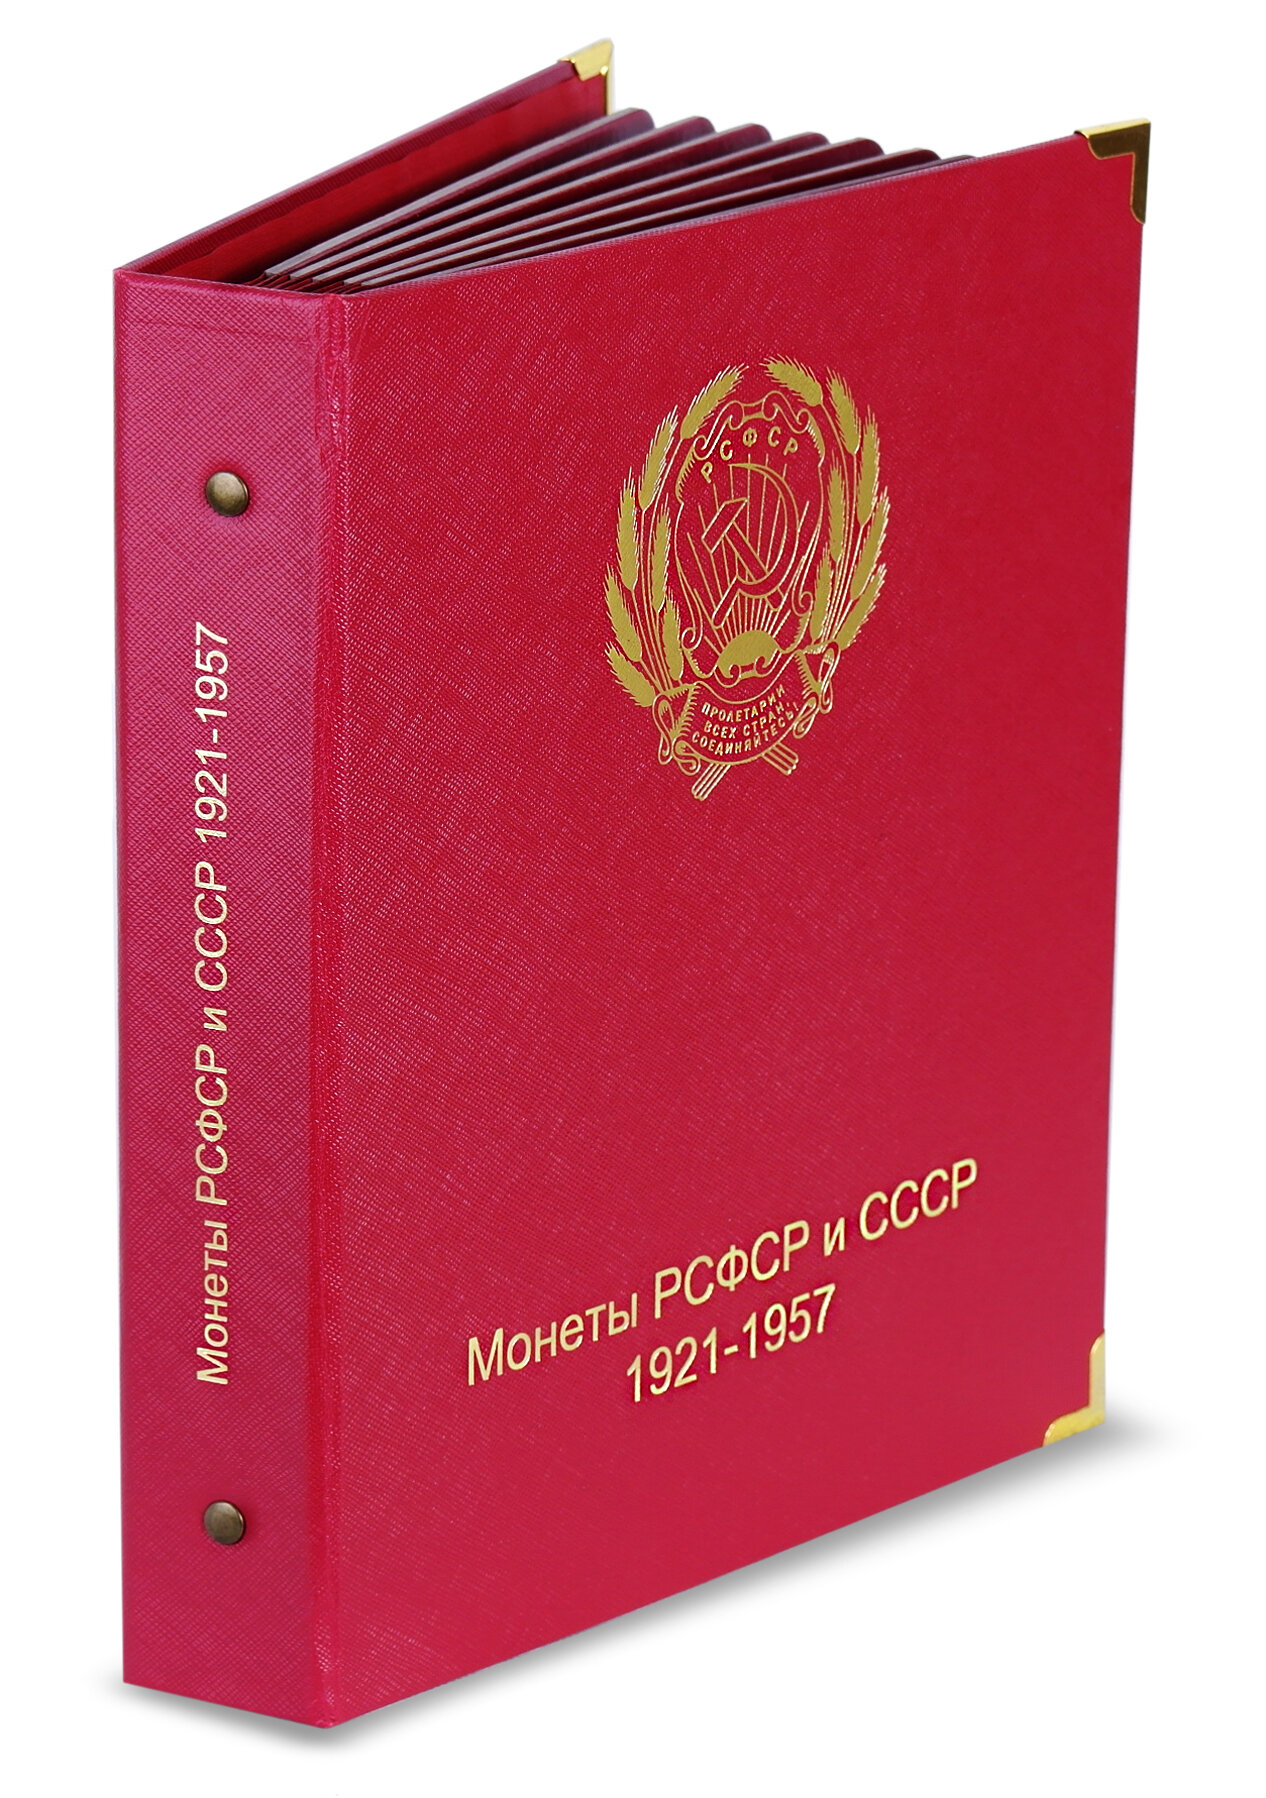 Альбом для монет РСФСР и СССР 1921-1957 по номиналам